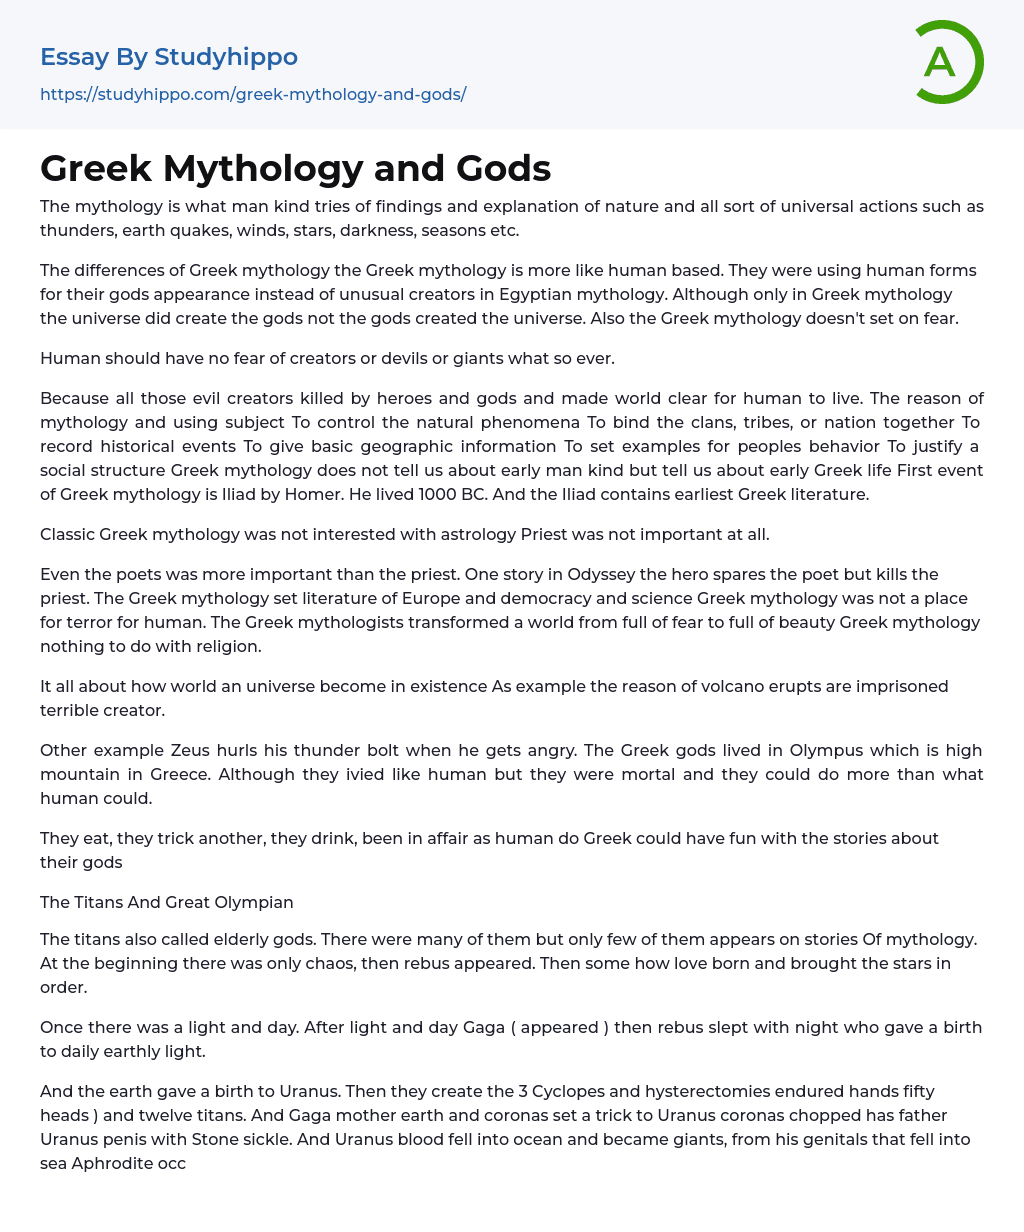 Greek Mythology and Gods Essay Example